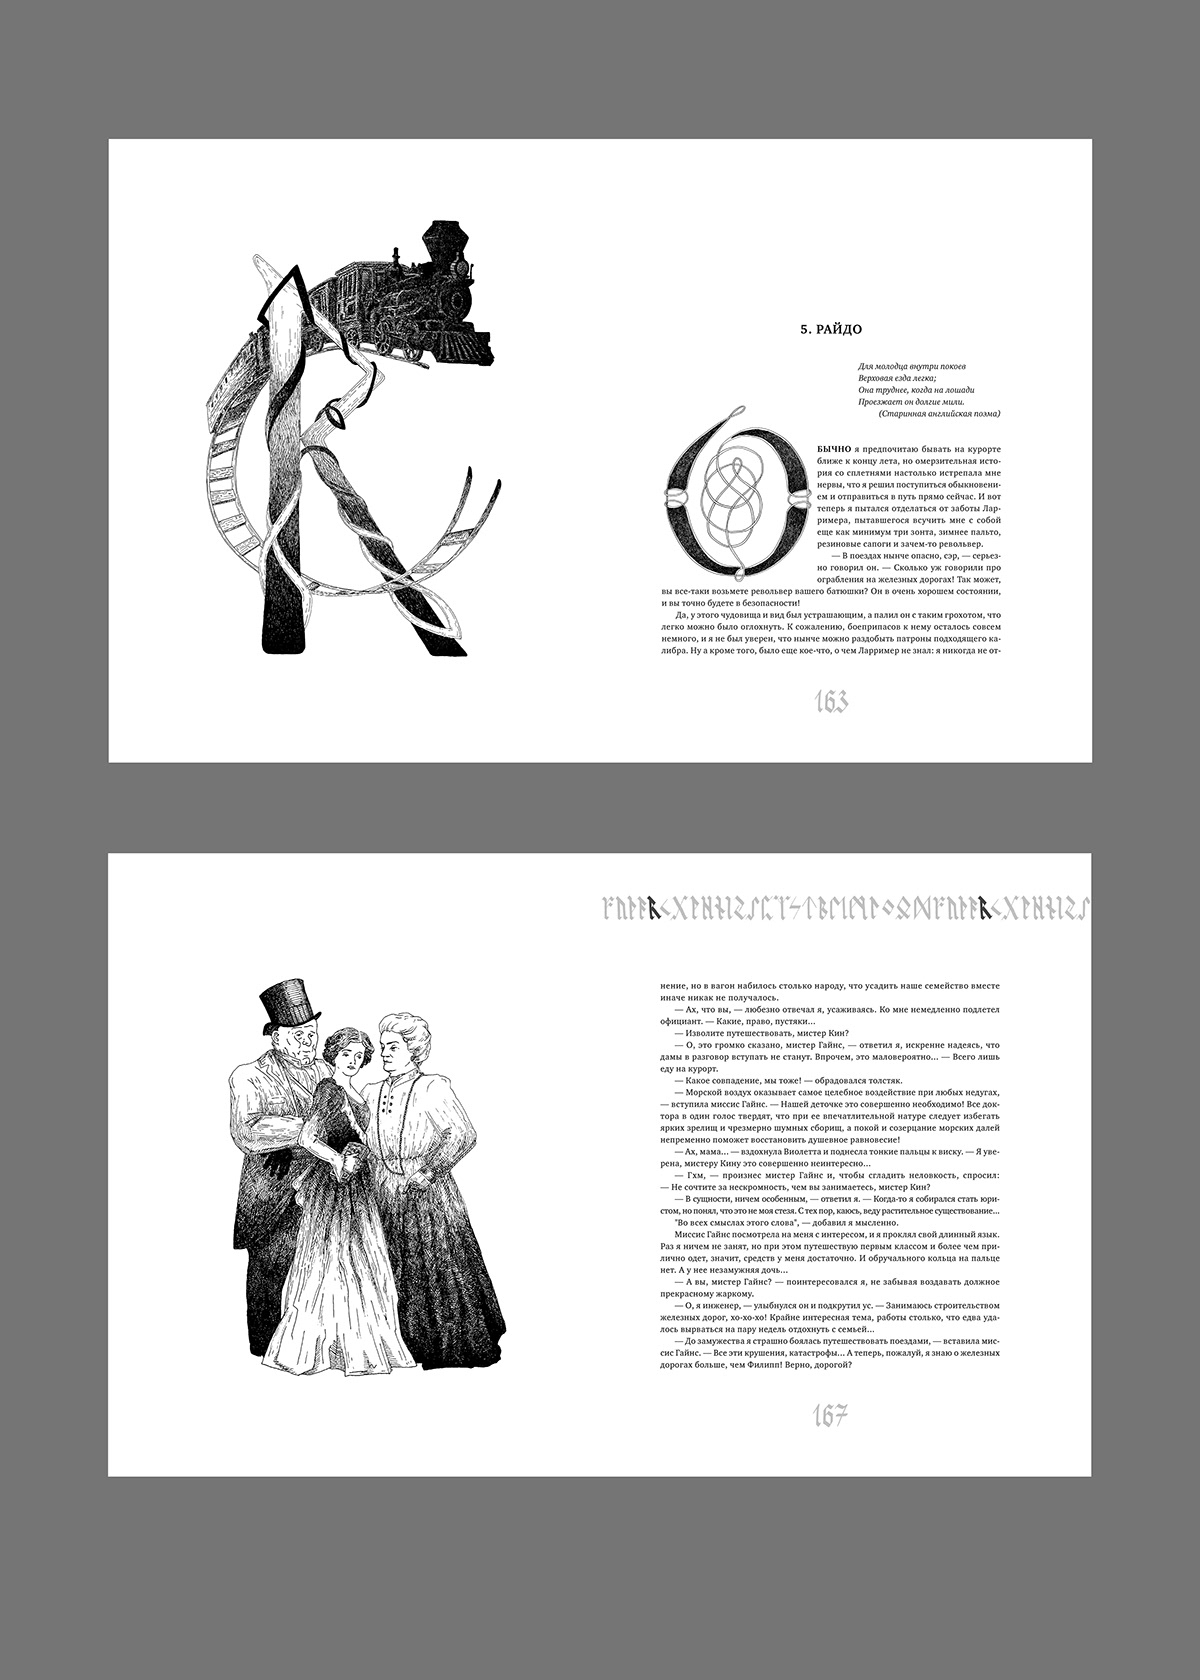 book ILLUSTRATION  print typography   book design Calligraphy   верстка иллюстрация книга полиграфия